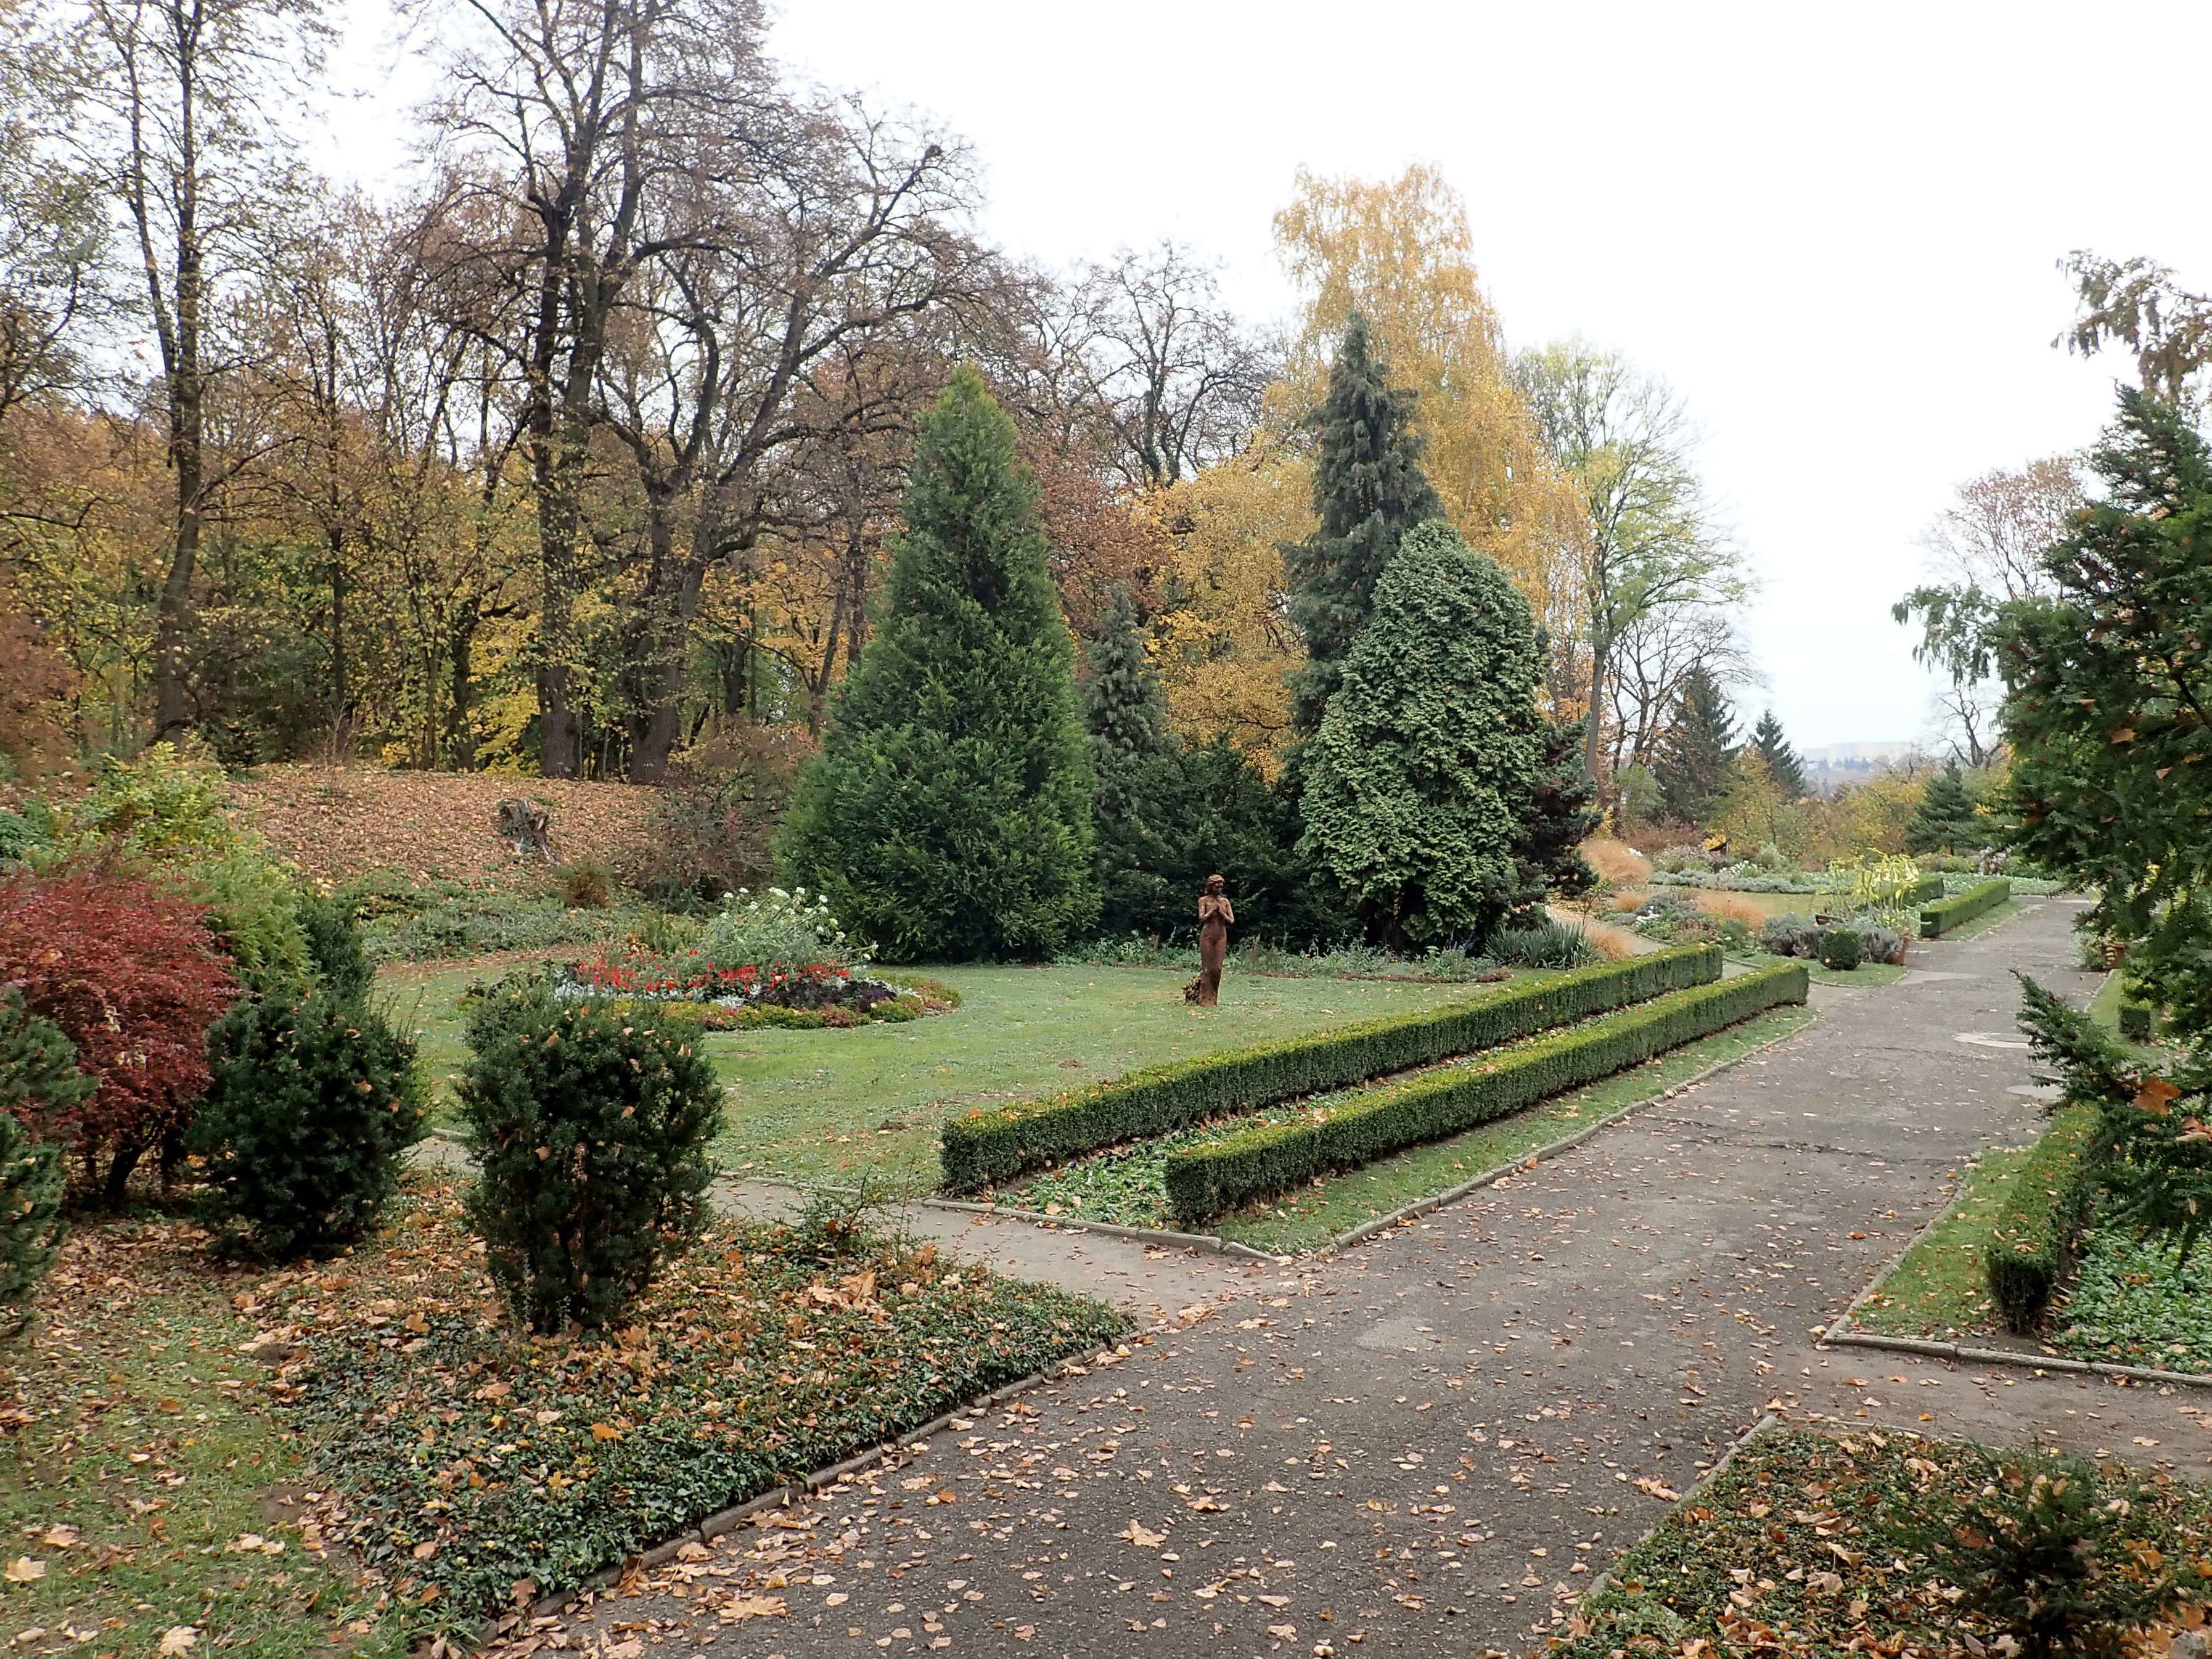 File:Ogrod Botaniczny Lublin 2018-10-22 3296.jpg - Wikimedia Commons